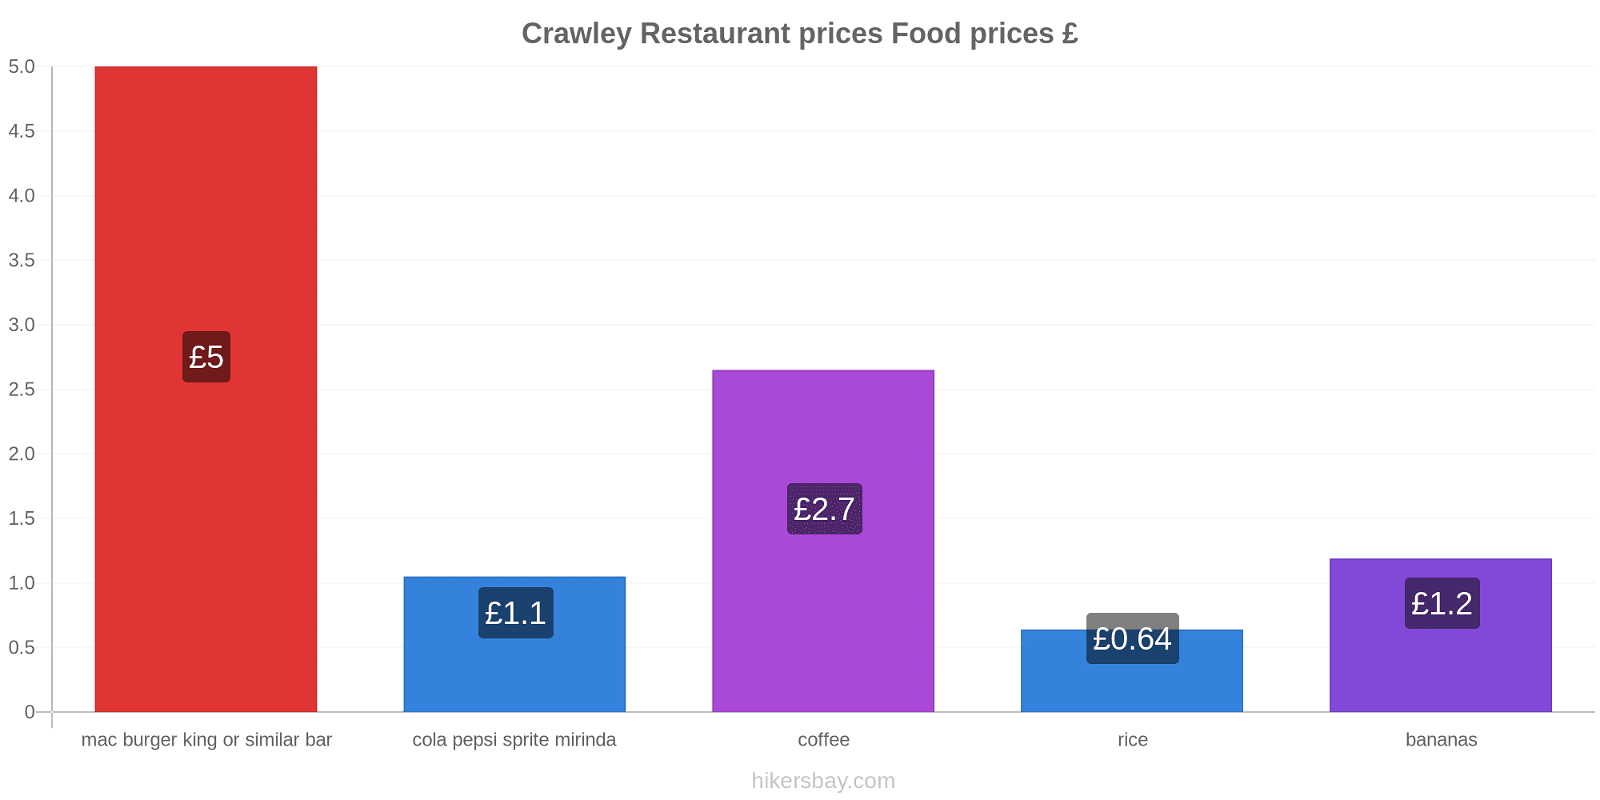 Crawley price changes hikersbay.com